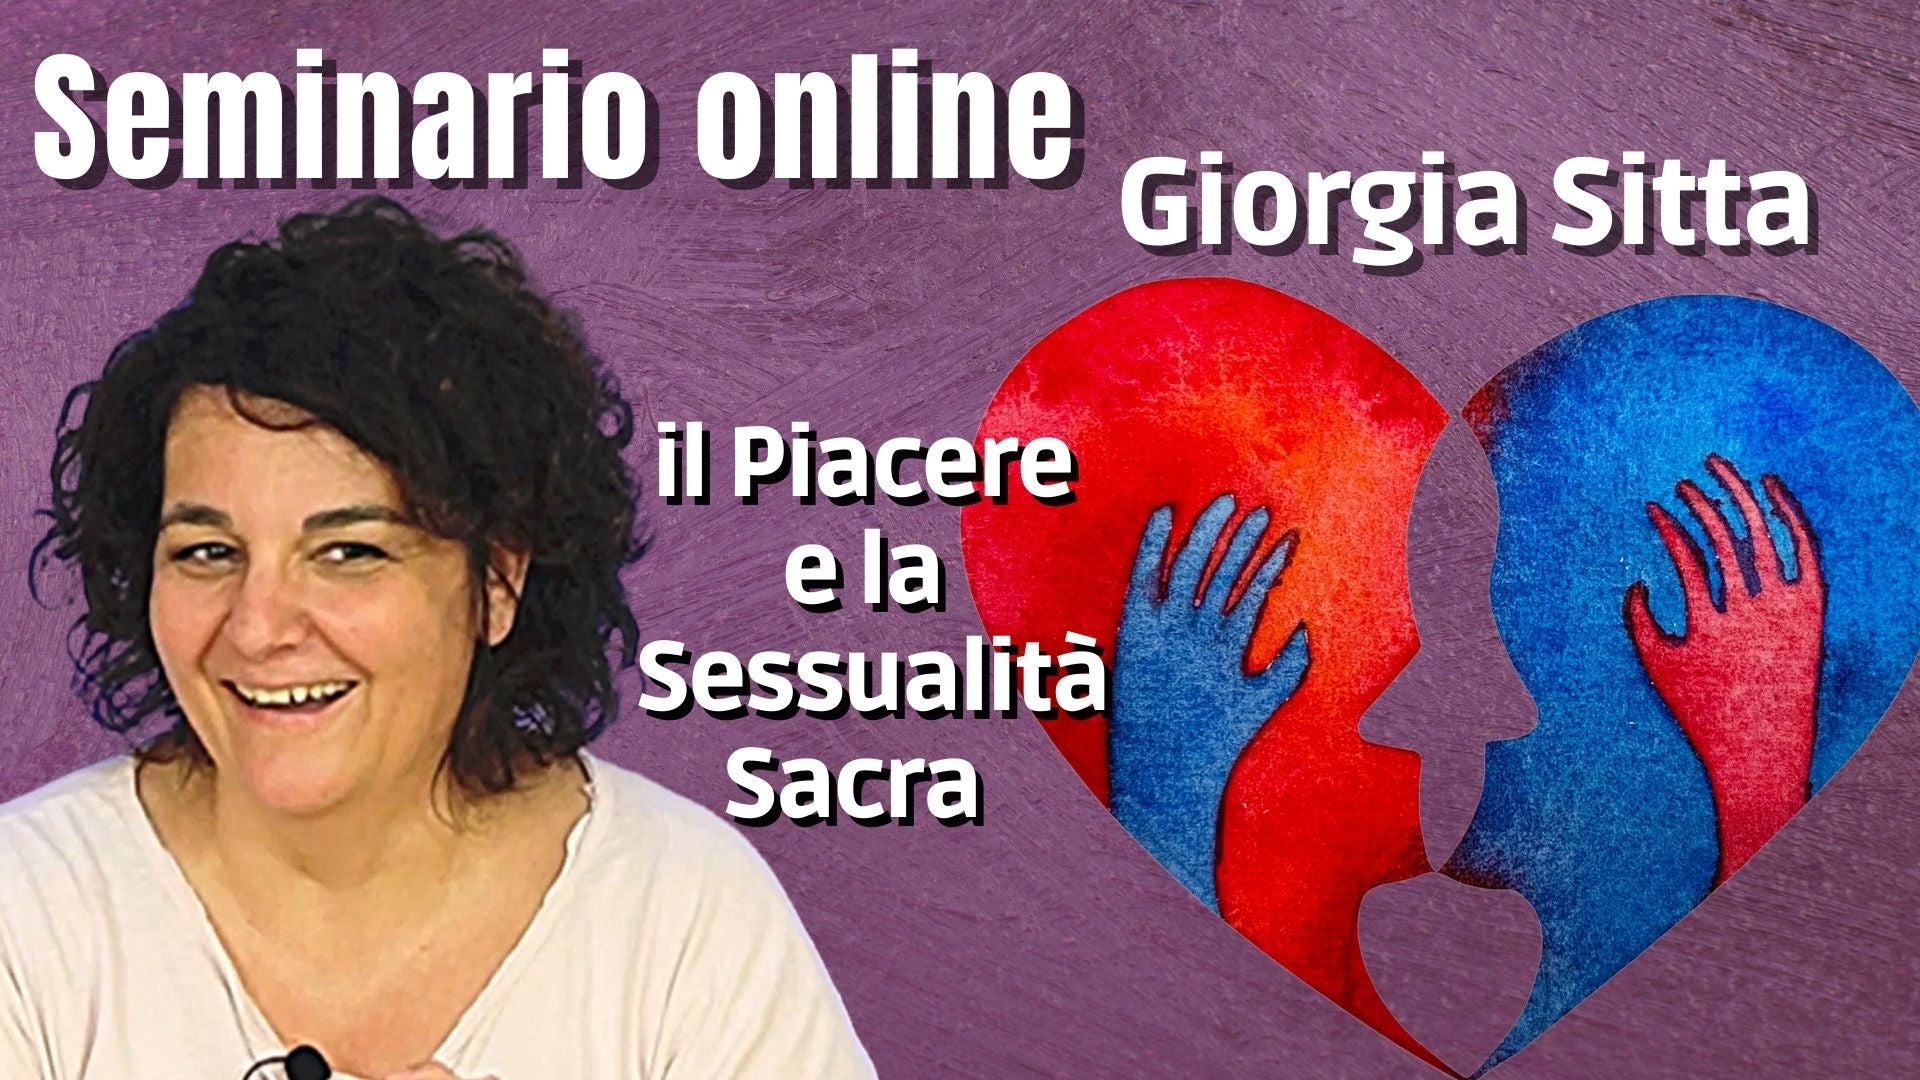 Video-seminario "Il Piacere e la Sessualità Sacra" - Giorgia Sitta (scaricabile e visibile in streaming senza limite)